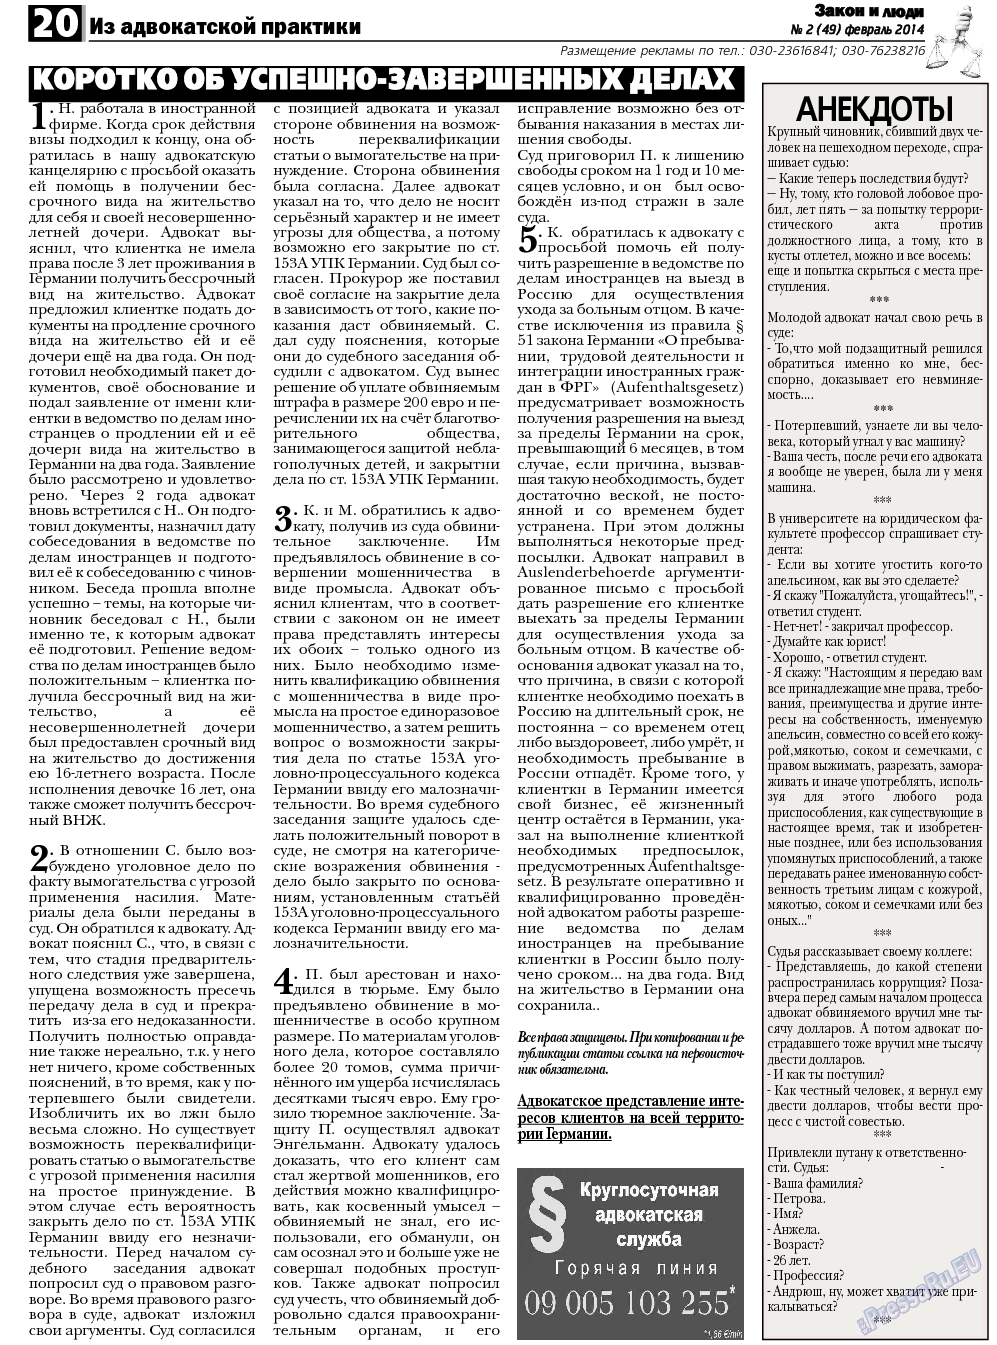 Закон и люди, газета. 2014 №2 стр.20